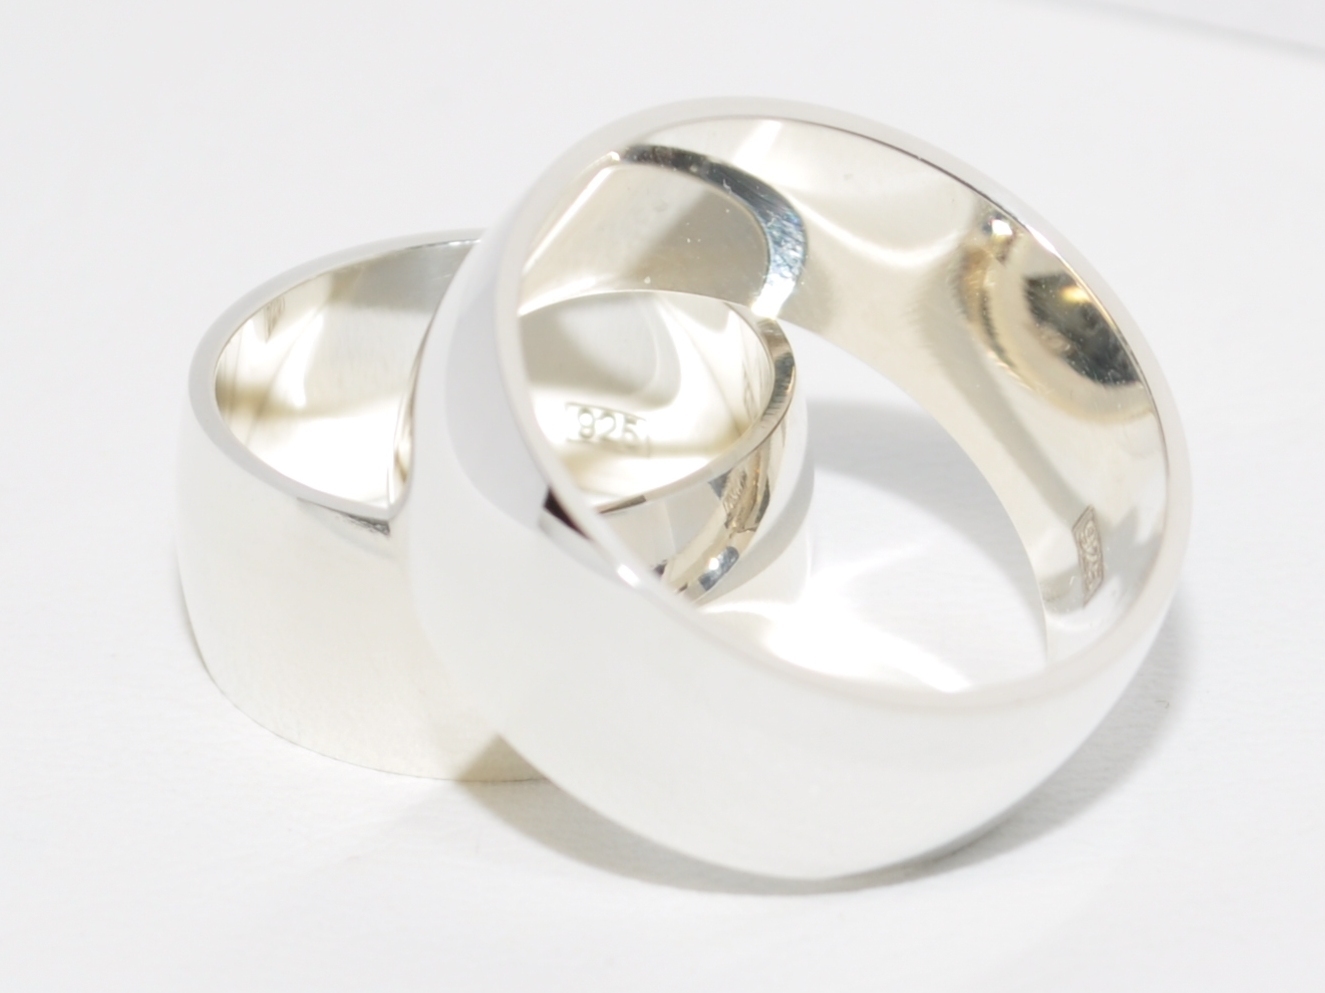 Preis für ein Paar 925 Silber Trauringe Eheringe Hochzeitsringe 9 mm Breit 